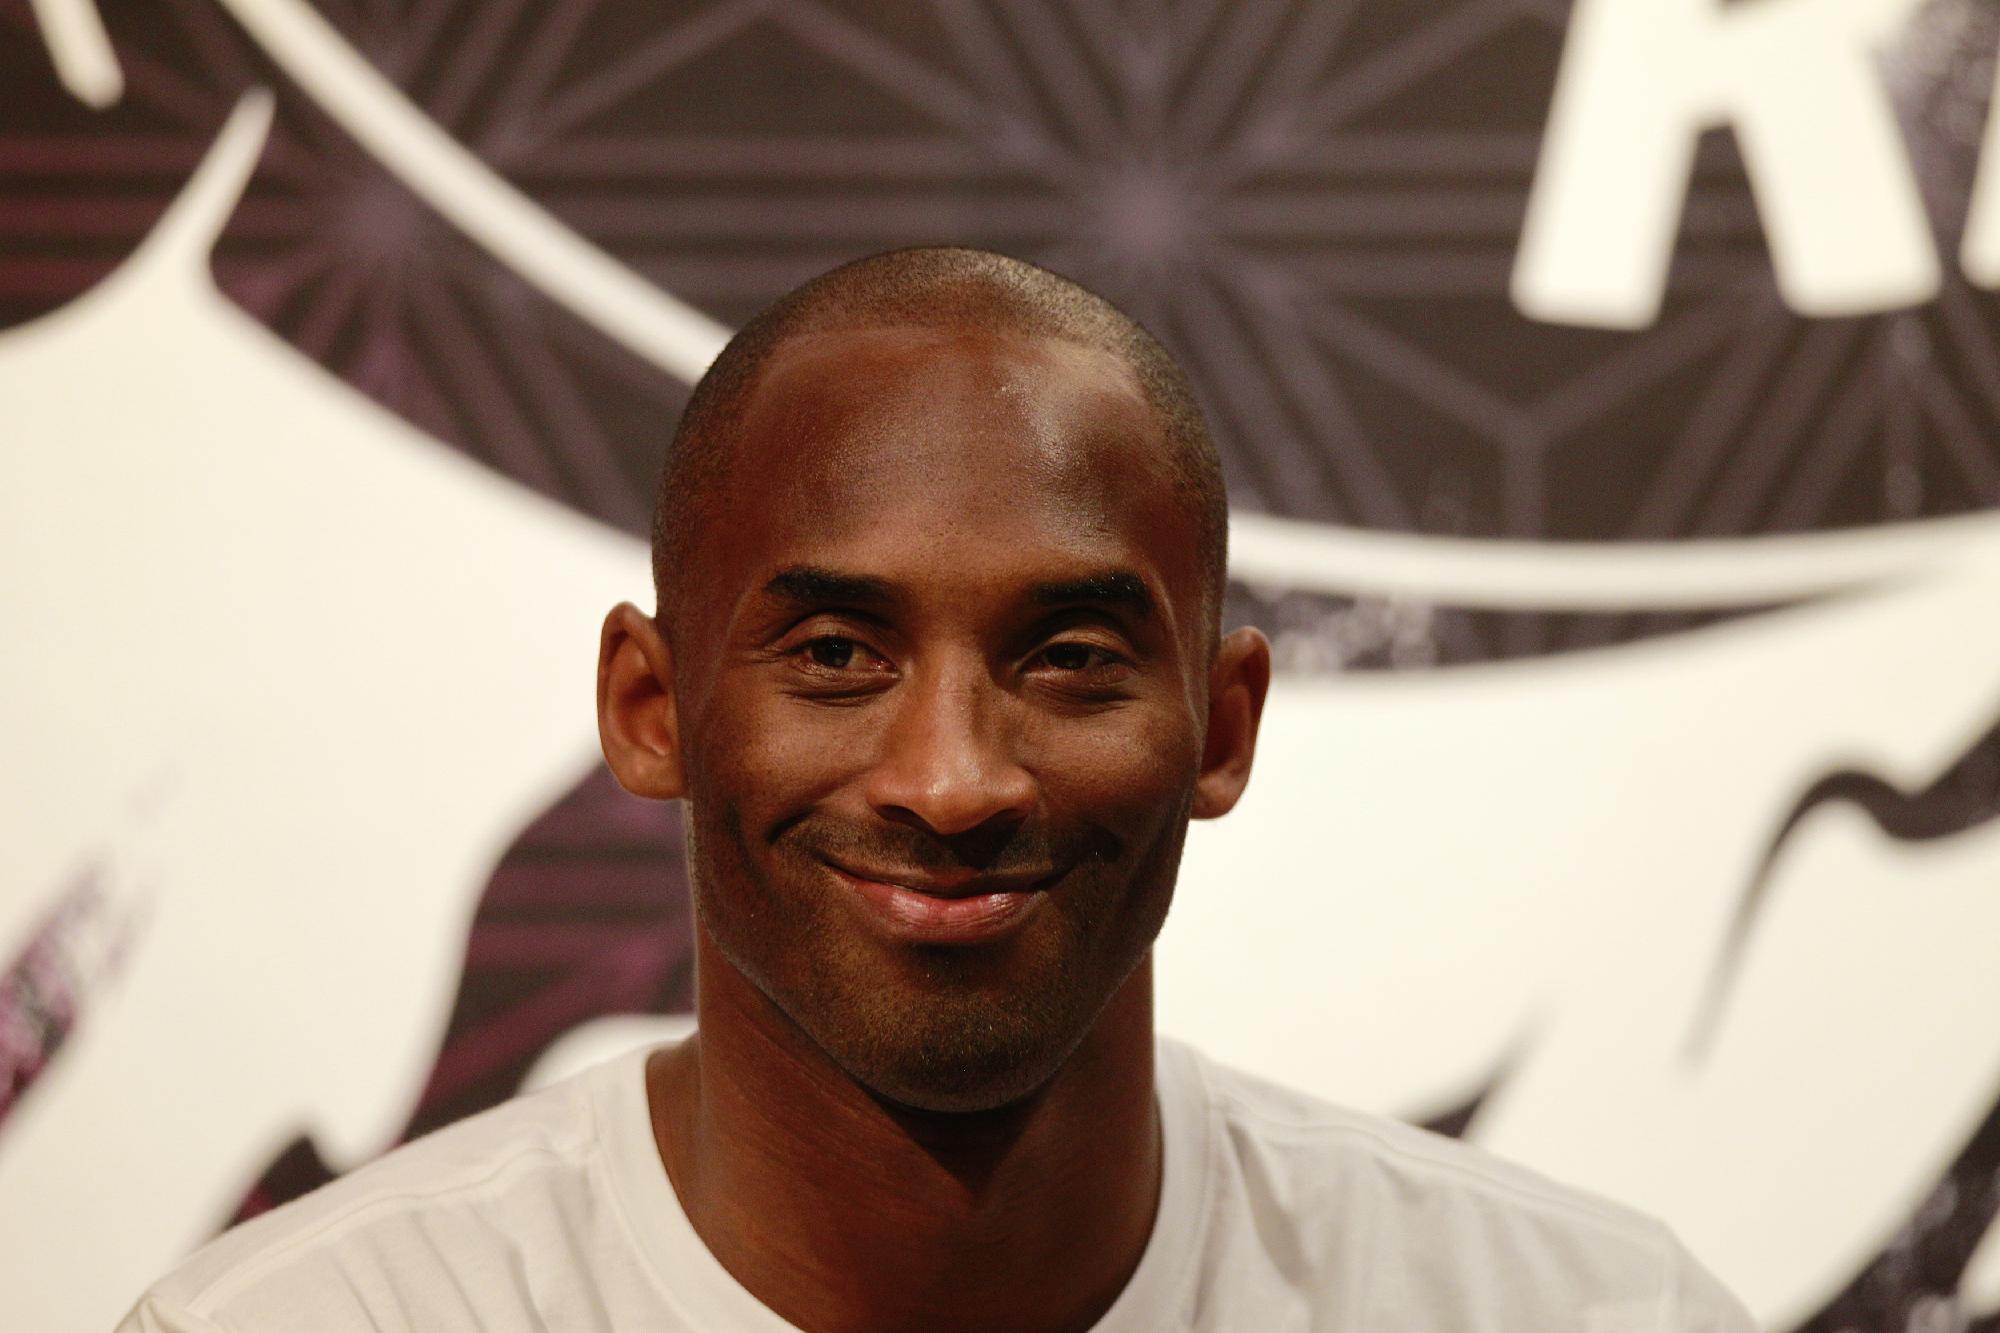 Szobrot emel Kobe Bryant tiszteletére a Los Angeles Lakers